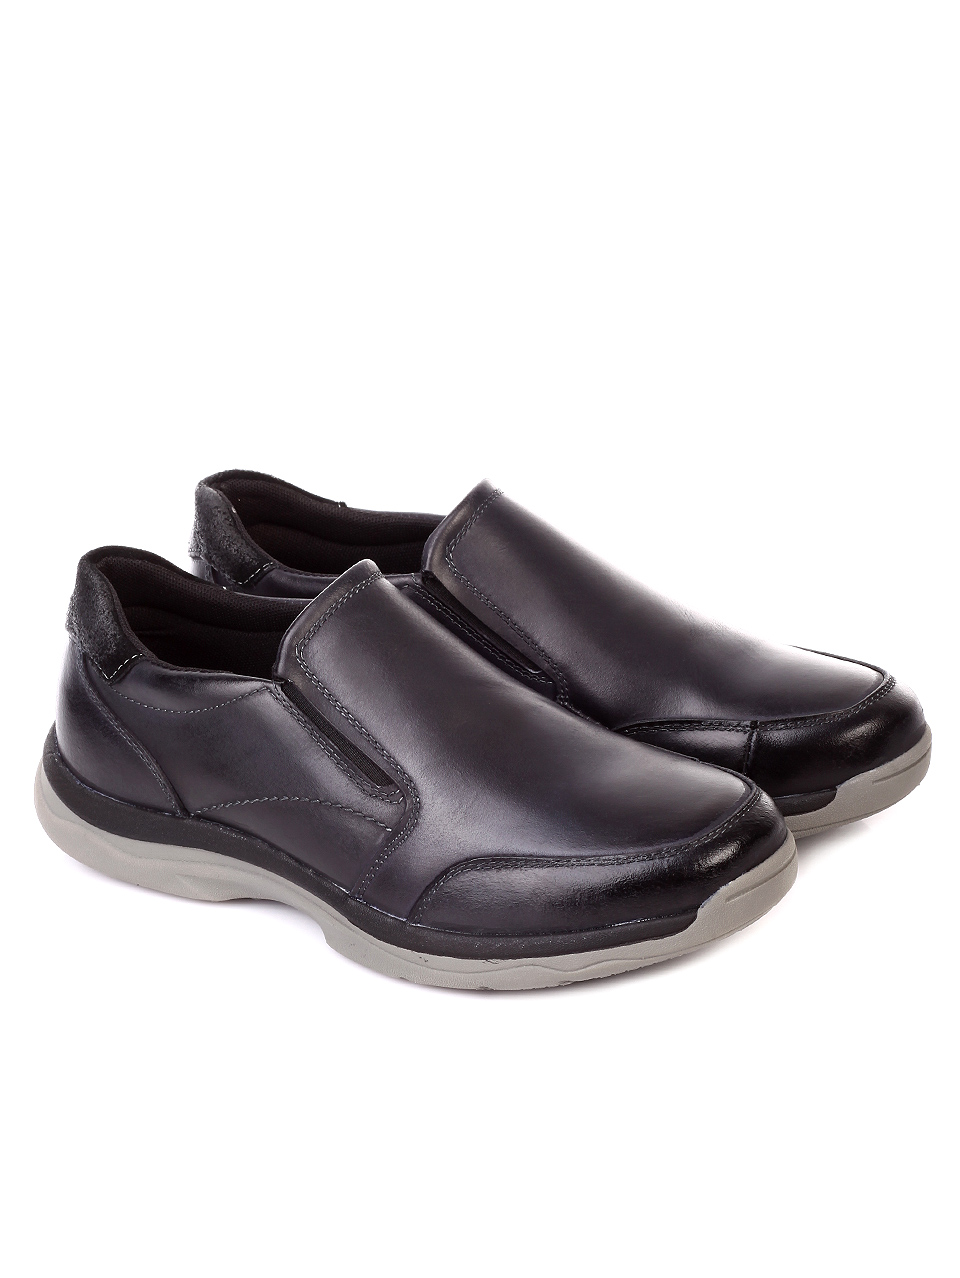 Ежедневни мъжки обувки от естествена кожа 7N-19766 black/navy